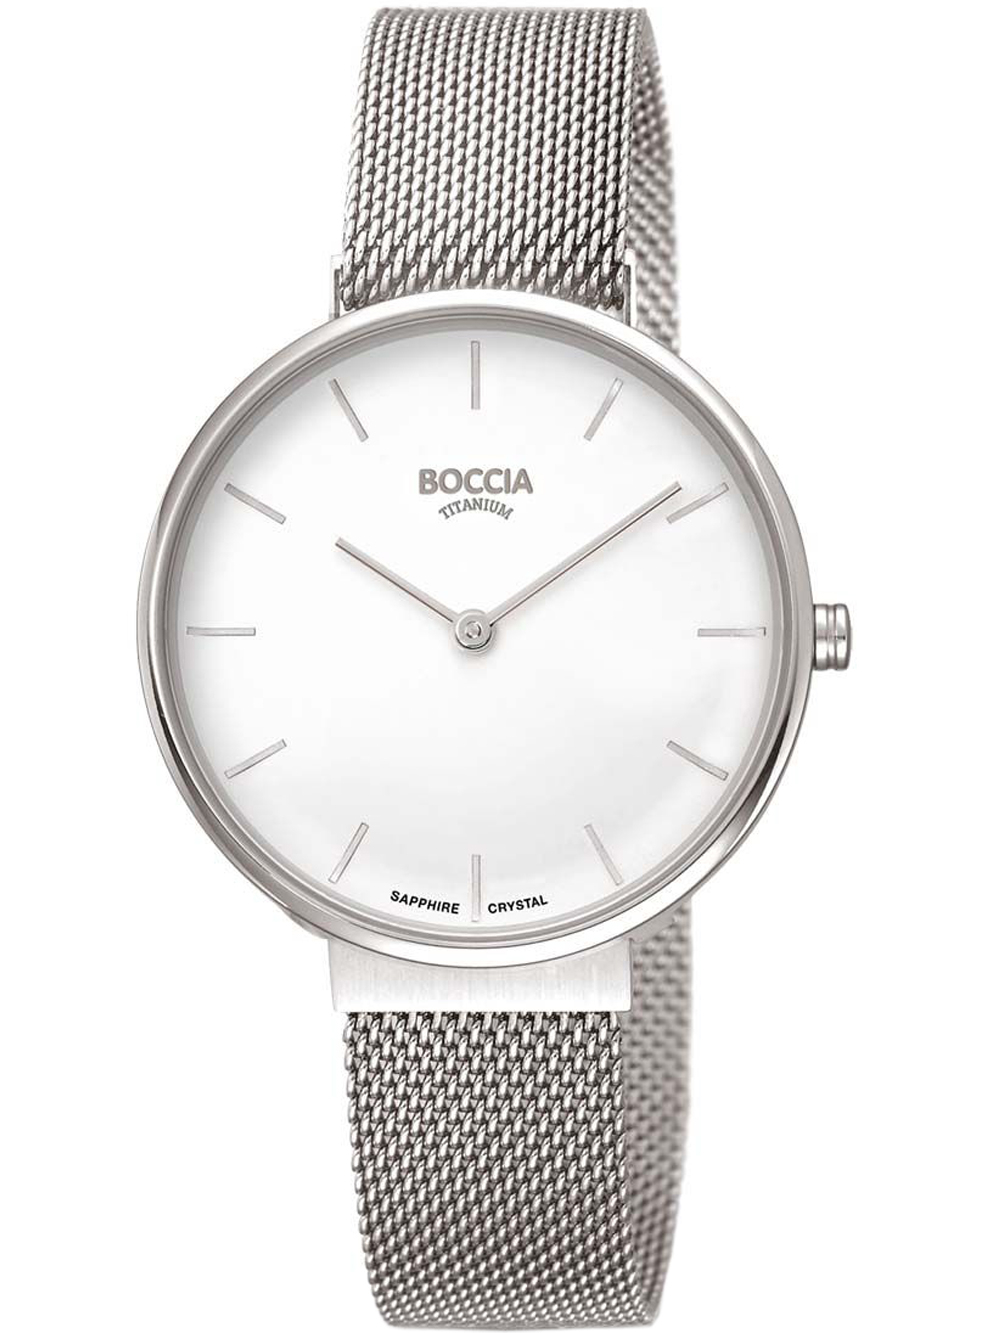 Dámské hodinky Boccia 3327-09 Ladies Watch Titanium 35mm 3ATM